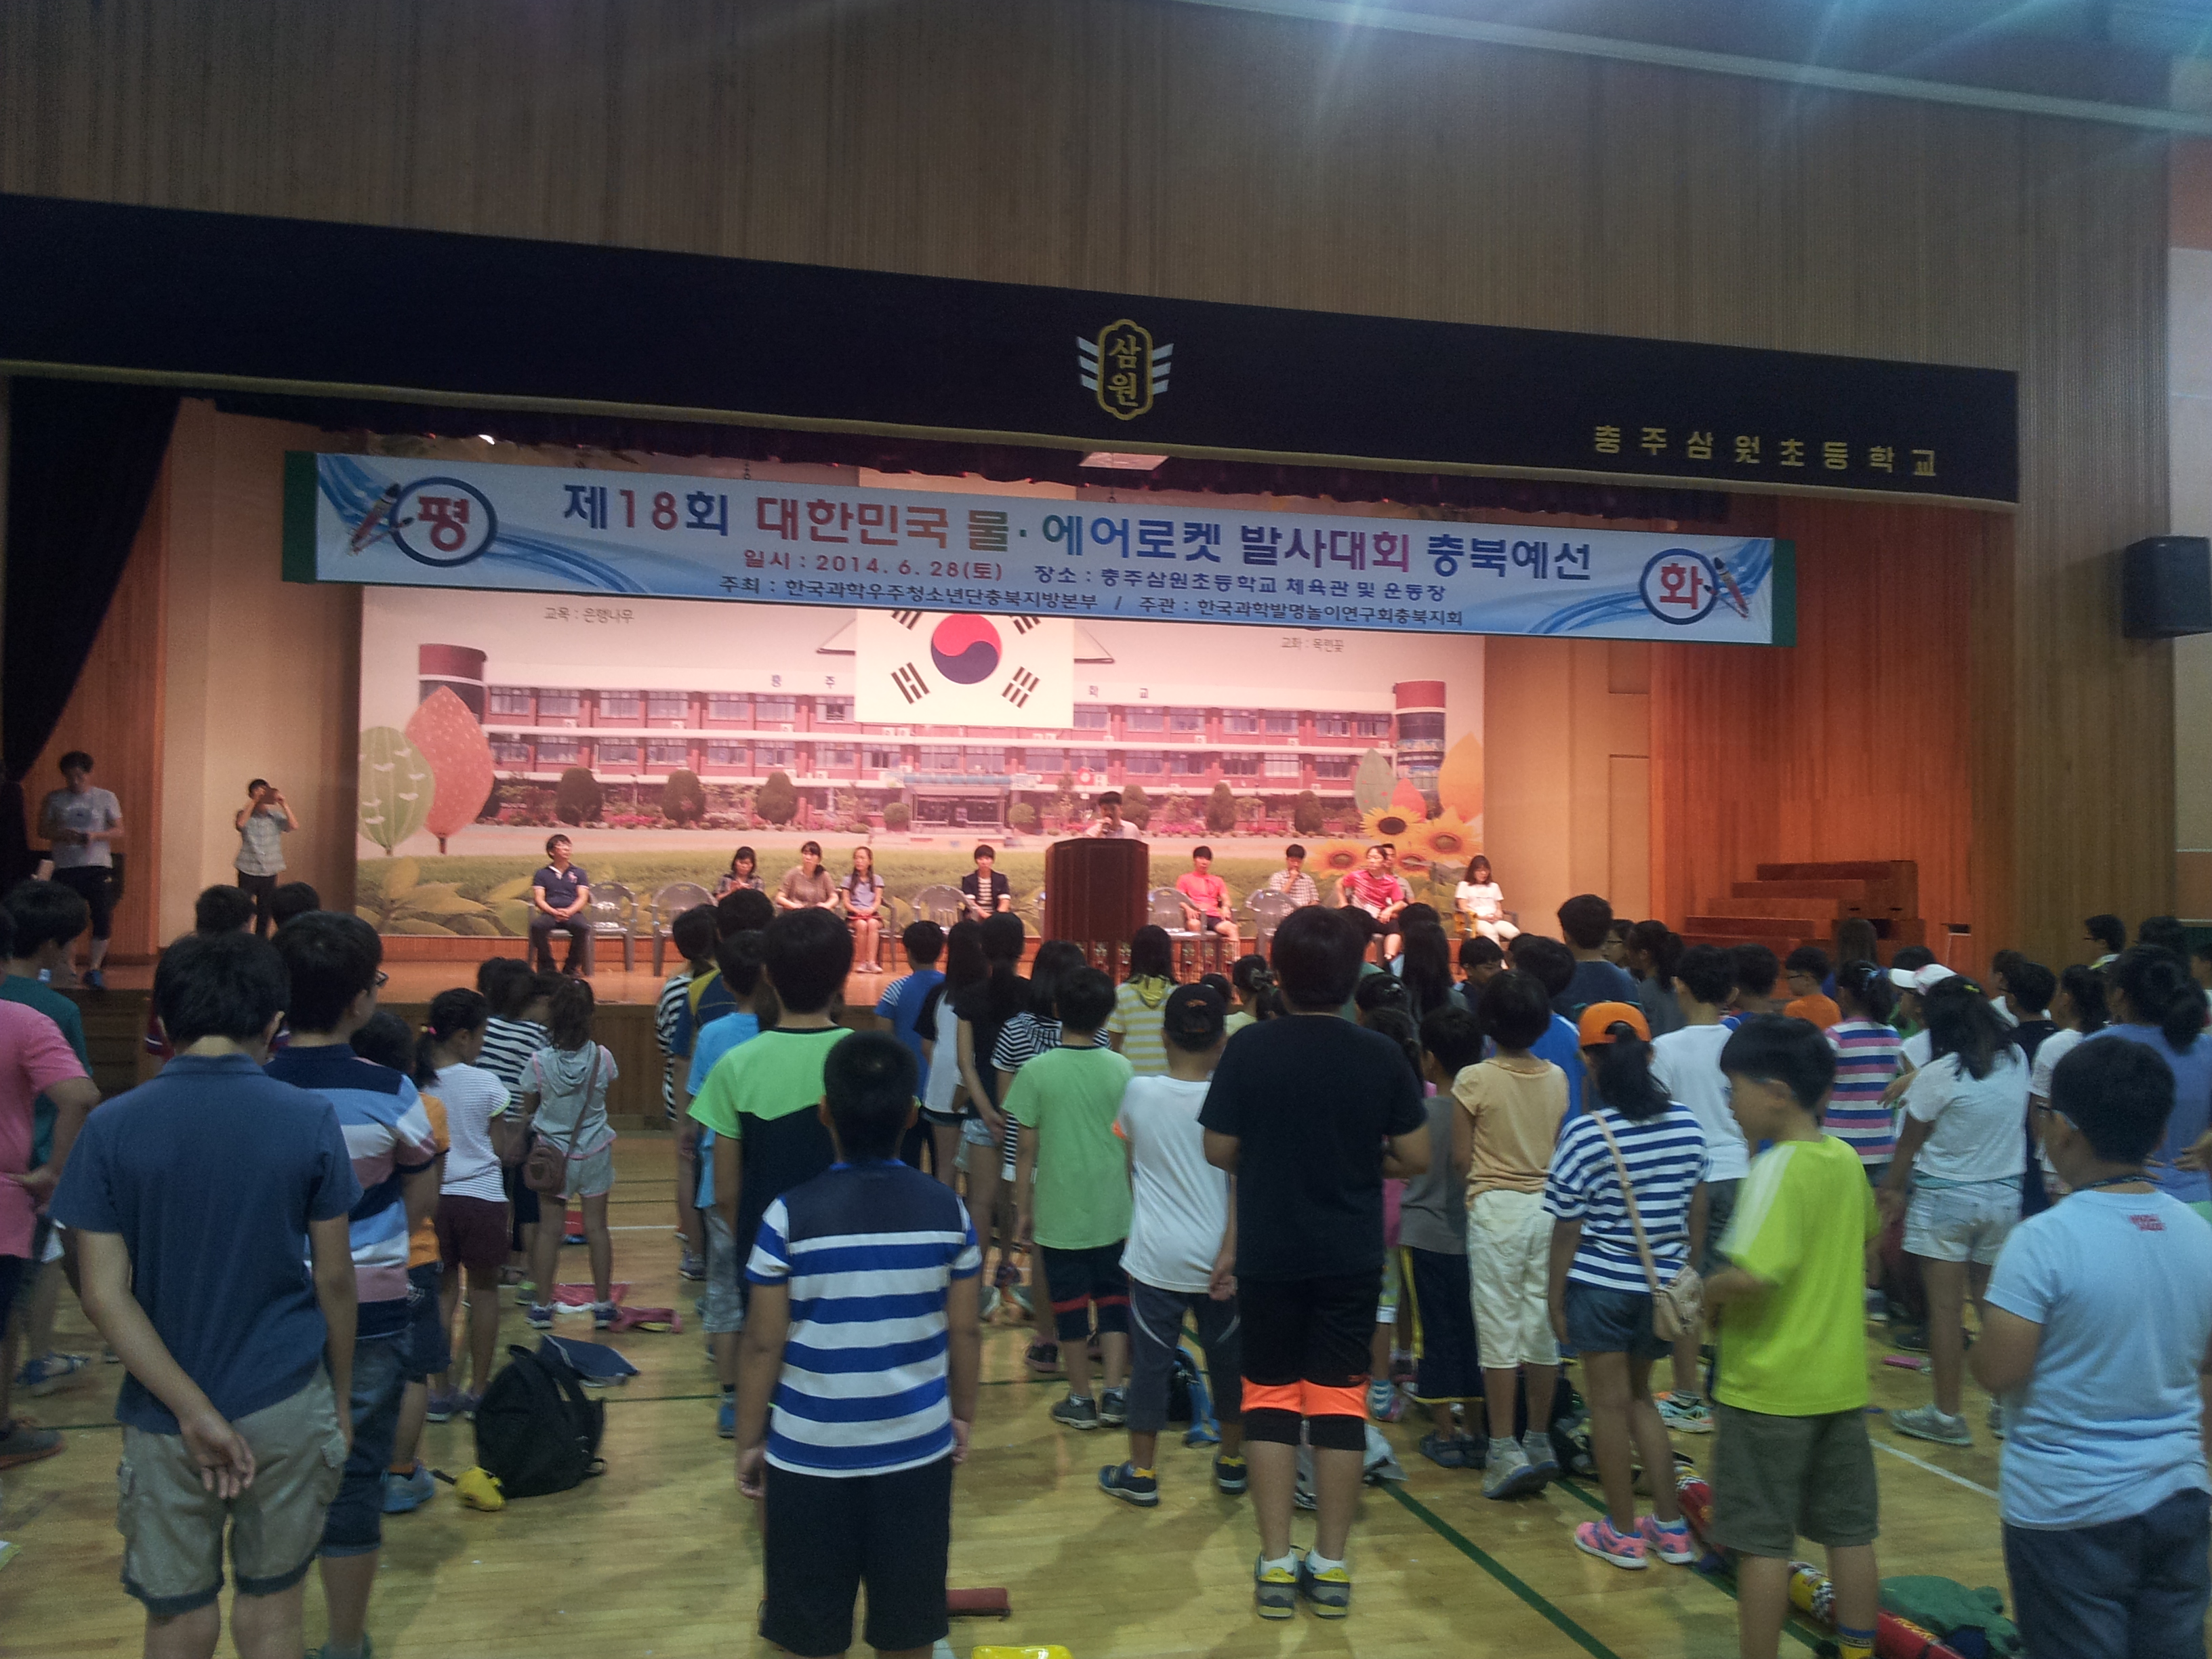 2014-06-28 09.20.22.jpg : 제18회 충북예선대회